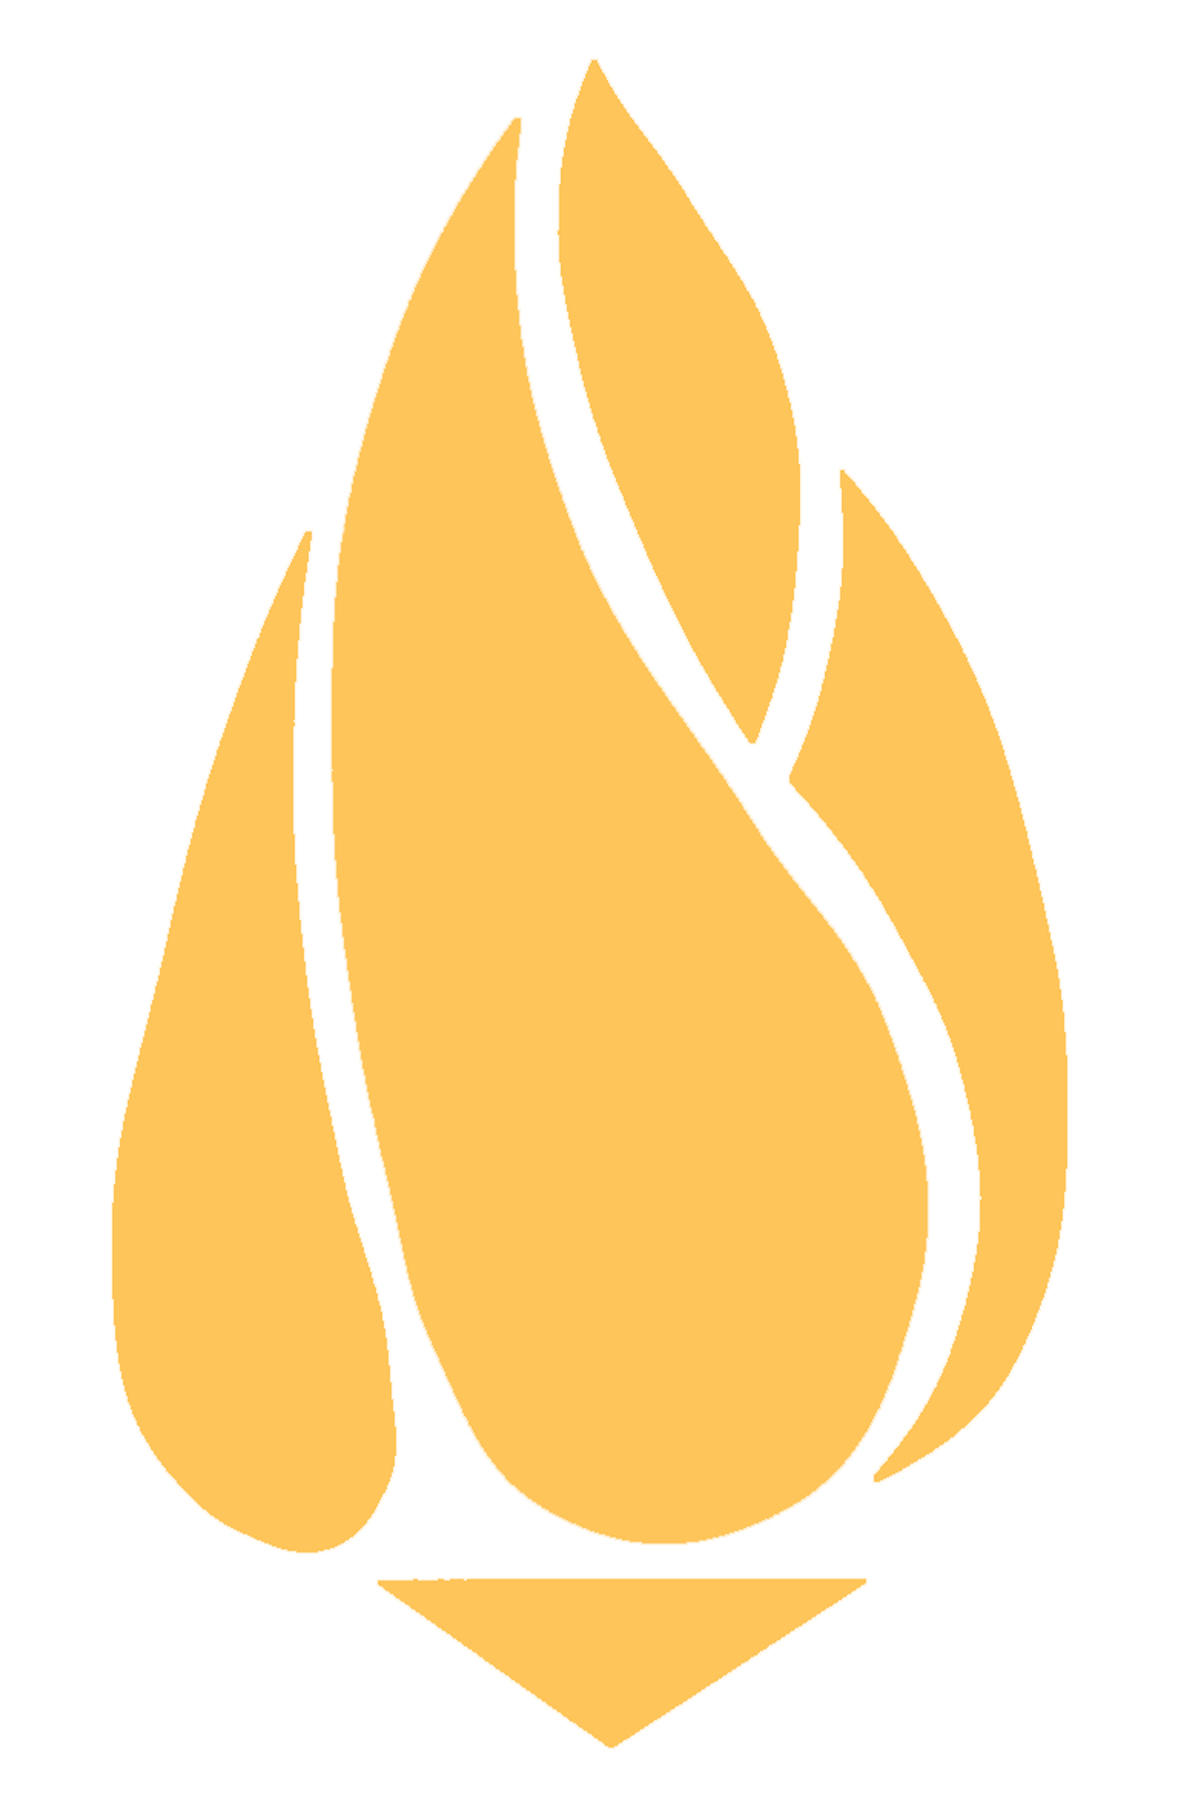 Gas Light Society logo